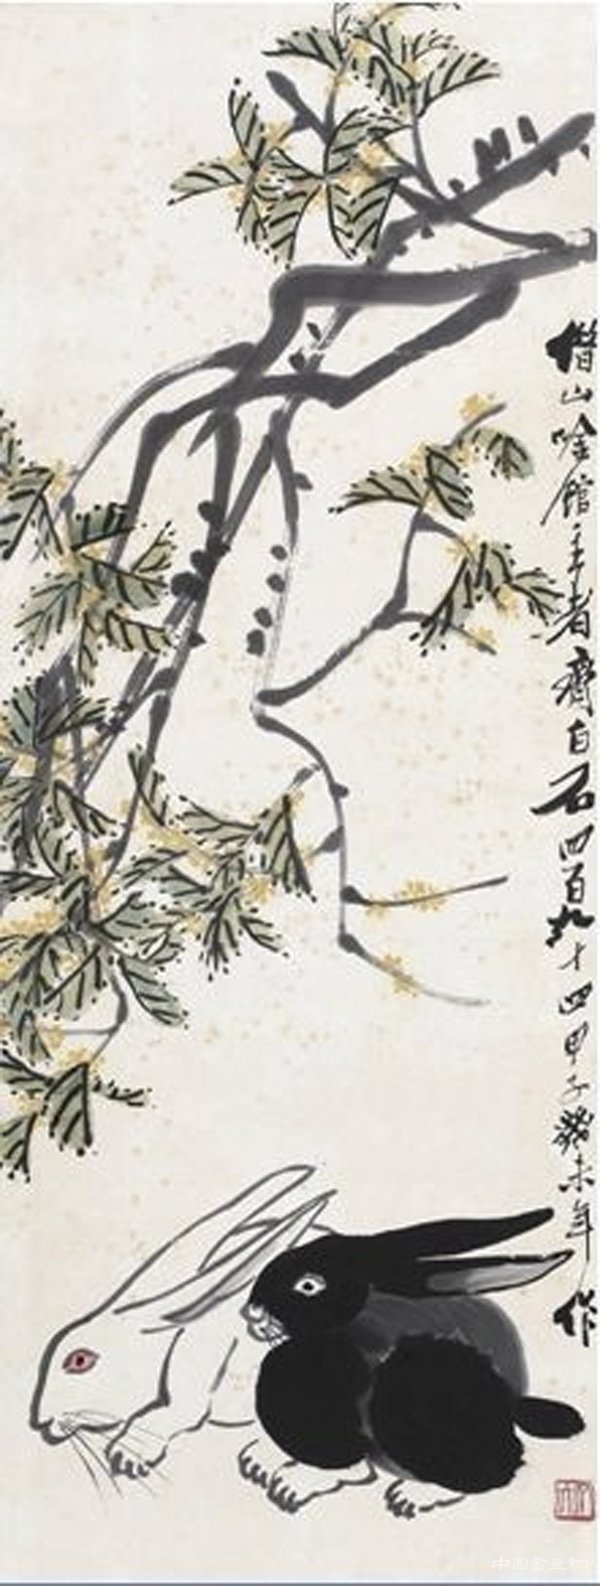  中国古代名画名帖中的中秋和月夜